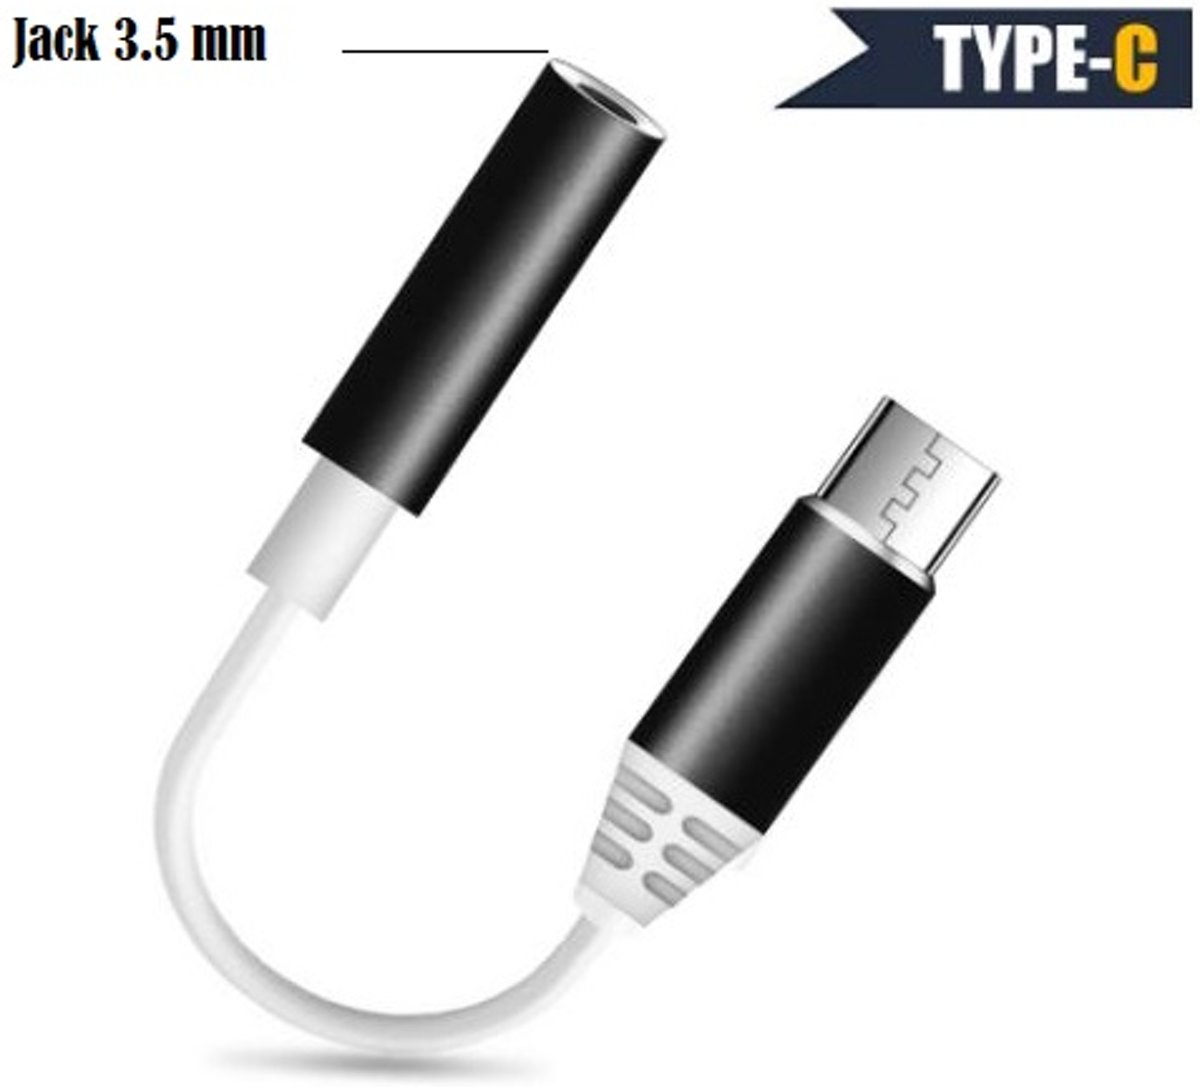 USB Type C naar 3.5mm Aux Jack Koptelefoon Hoofdtelefoon Audio Adapter Voor Xiaomi 9 Voor Huawei Voor iPad Pro 2018 Alle Type-C Bellen Kabel